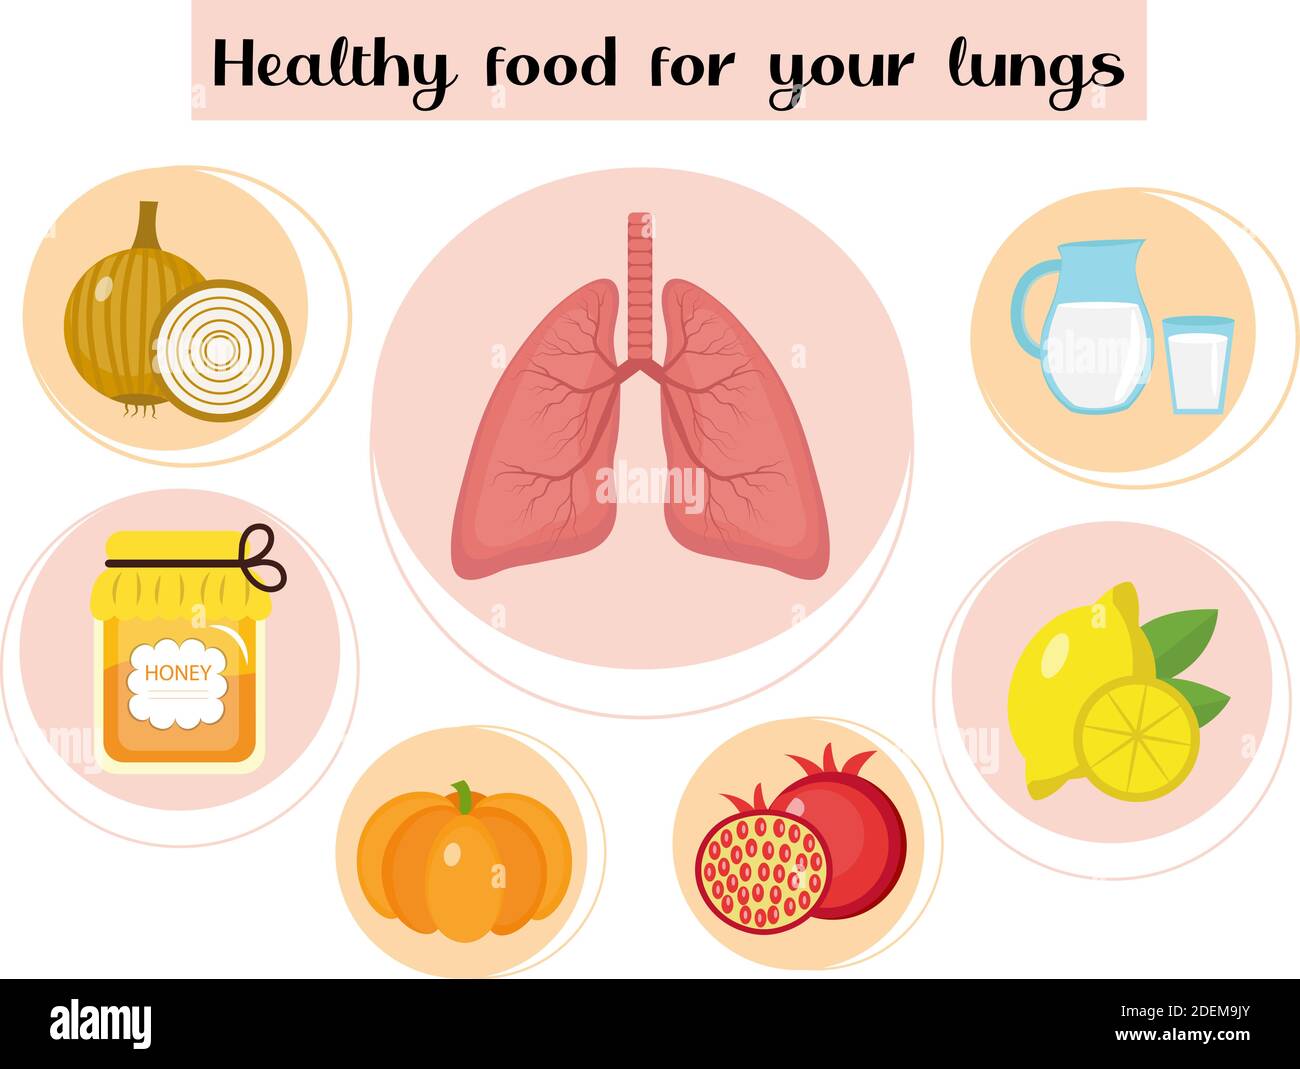 Gesunde Ernährung für die Lunge. Konzept von Lebensmitteln und Vitaminen, Medizin, Prävention von Atemwegserkrankungen. Vektorgrafik Stock Vektor